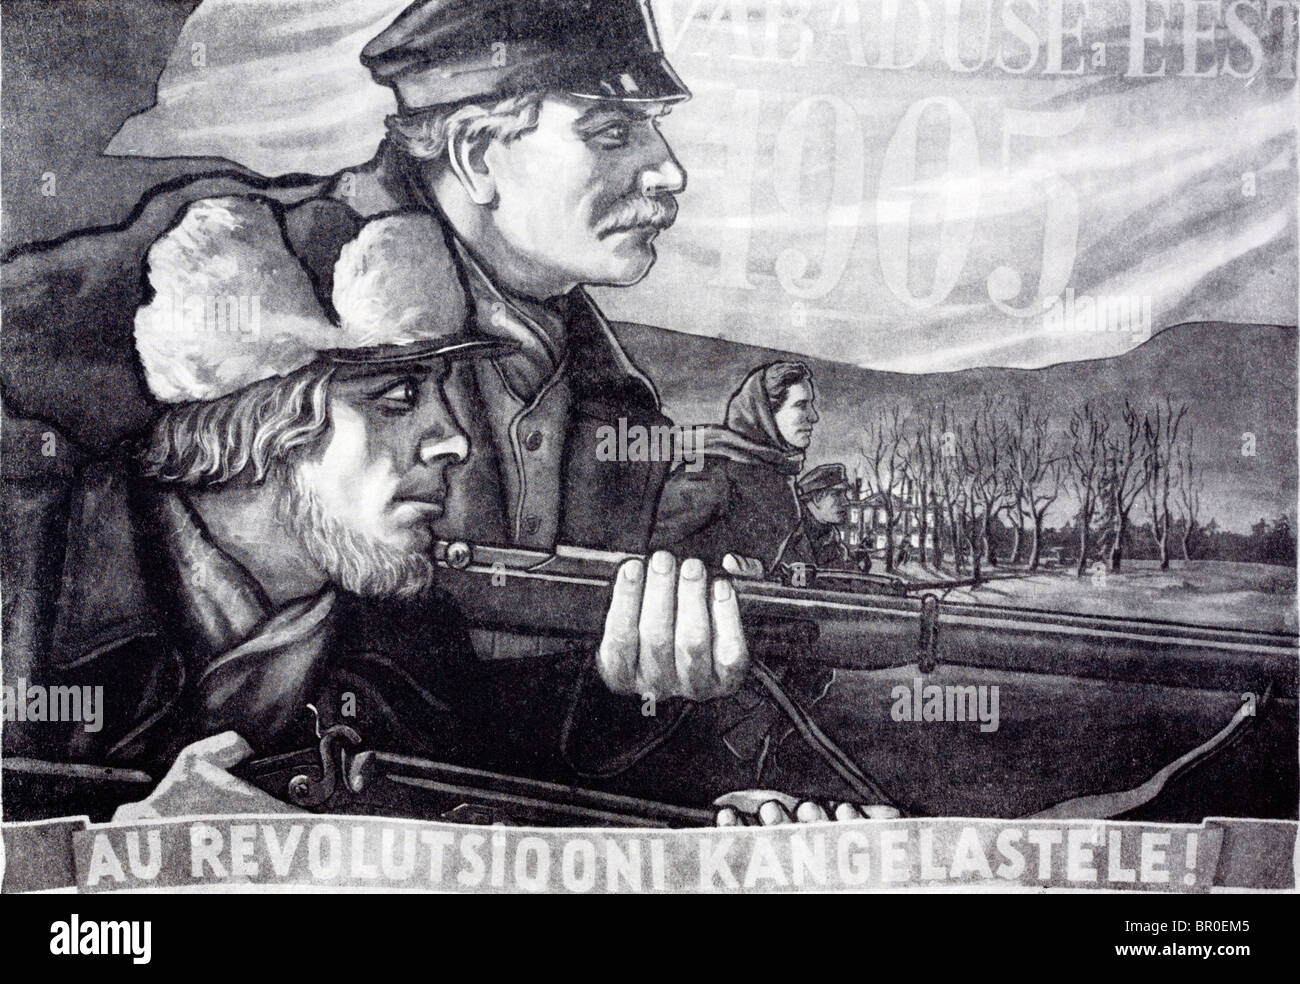 Sowjetische Propaganda-Plakat der russischen 1905-Revolution auf Estnisch. . "Für die revolutionären Helden!" Wahrscheinlich Stalin. Stockfoto